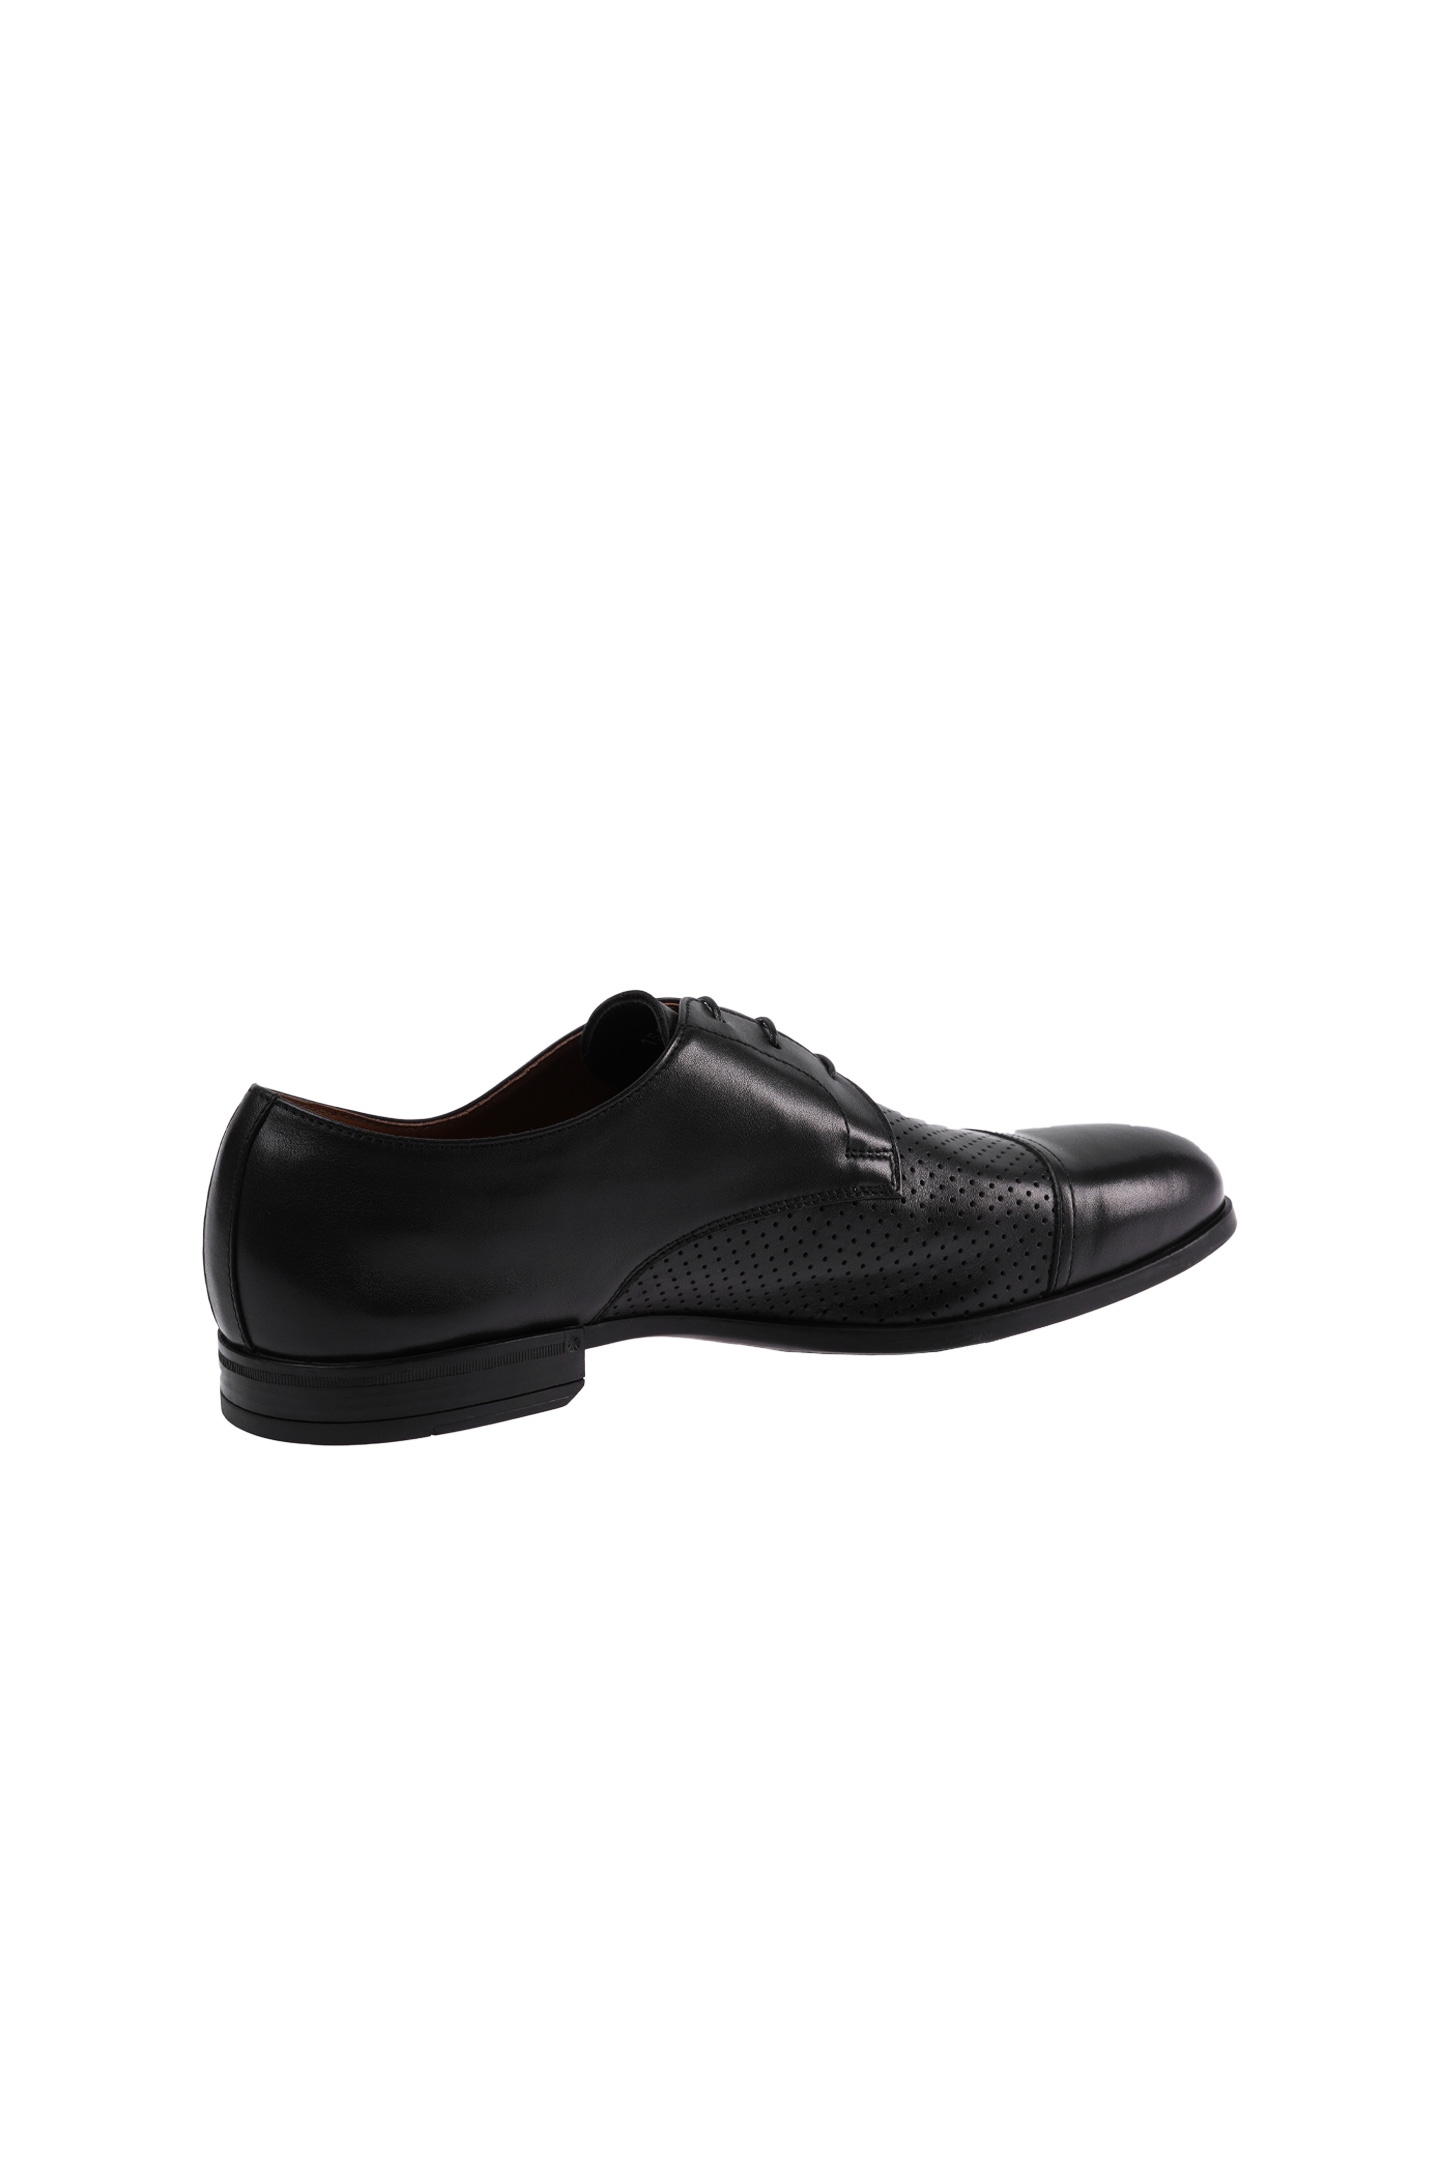 Туфли DOUCAL'S DU1533OSLOUZ065, цвет: Черный, Мужской